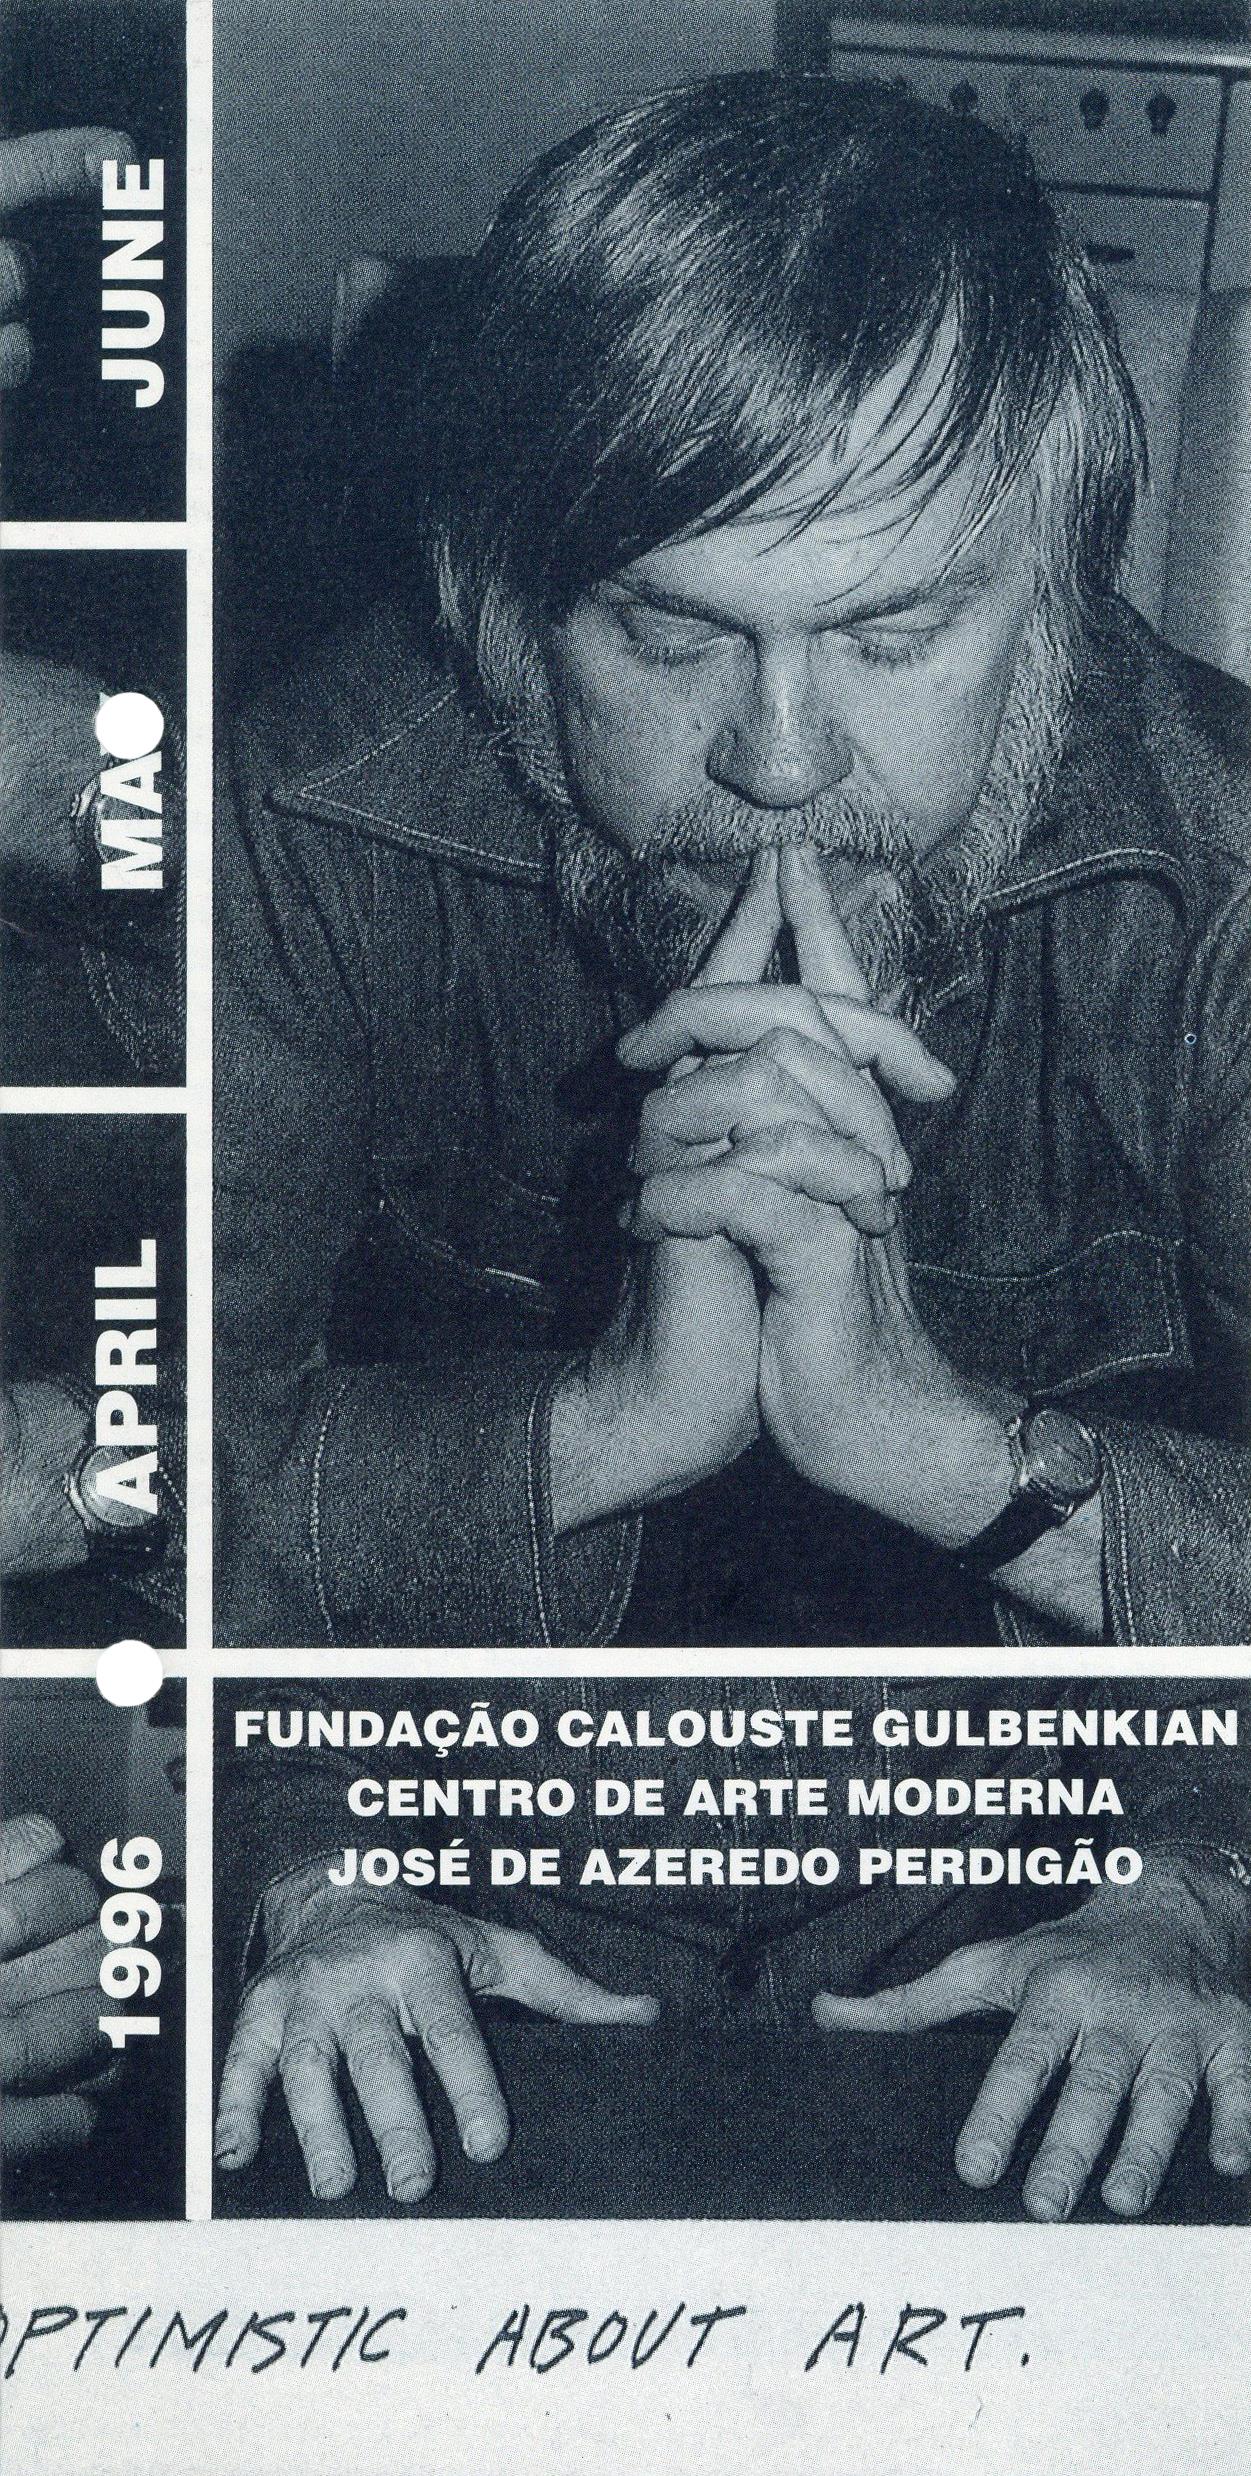 Fundação Calouste Gulbenkian Centro de Arte Moderna. April, May, June 1996